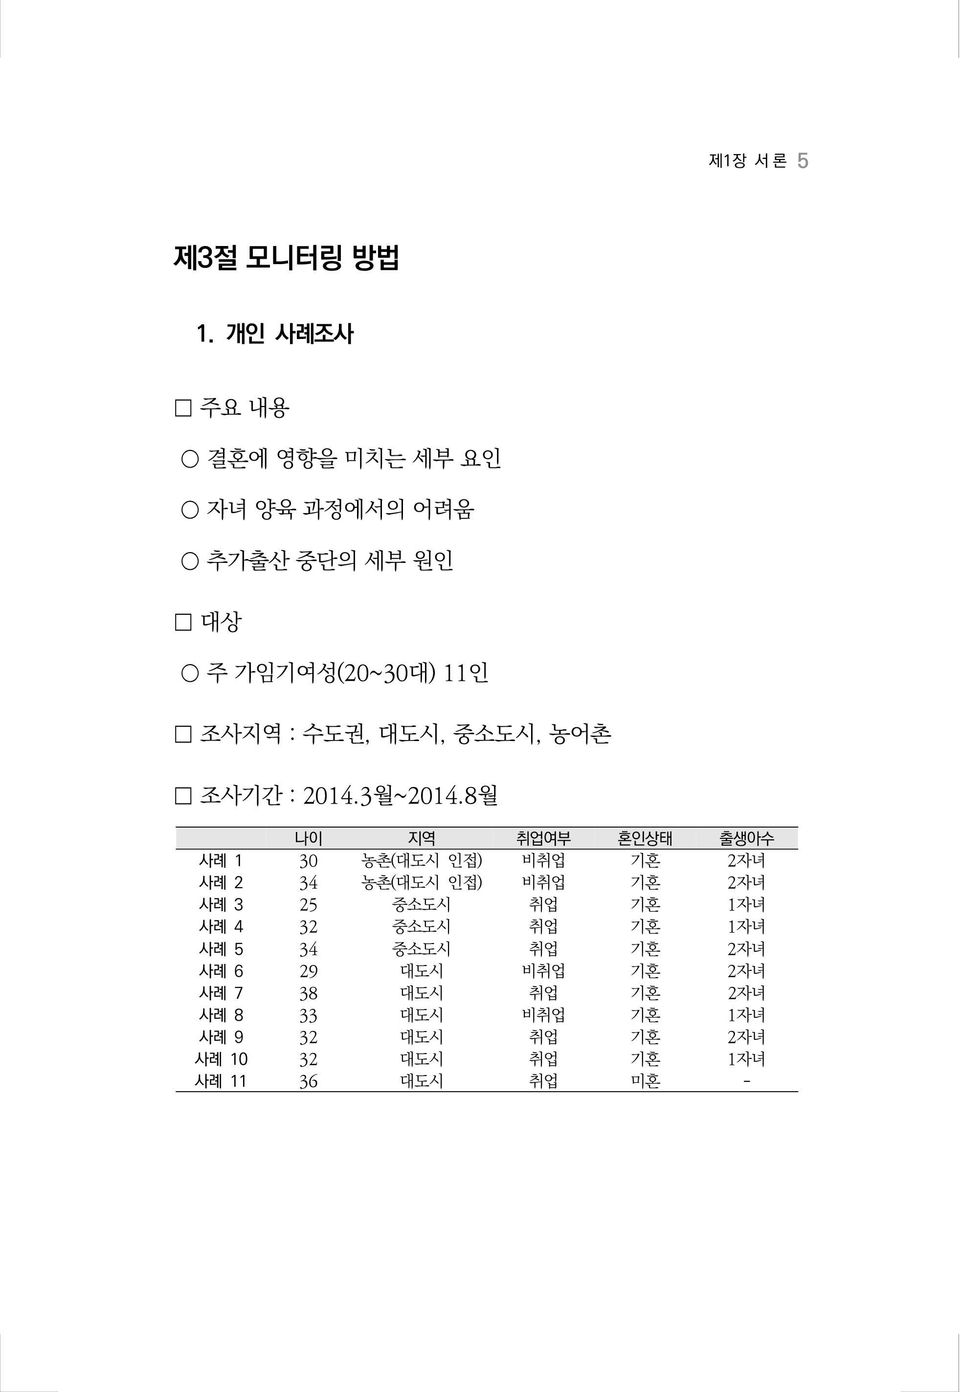 농어촌 조사기간 : 2014.3월~2014.